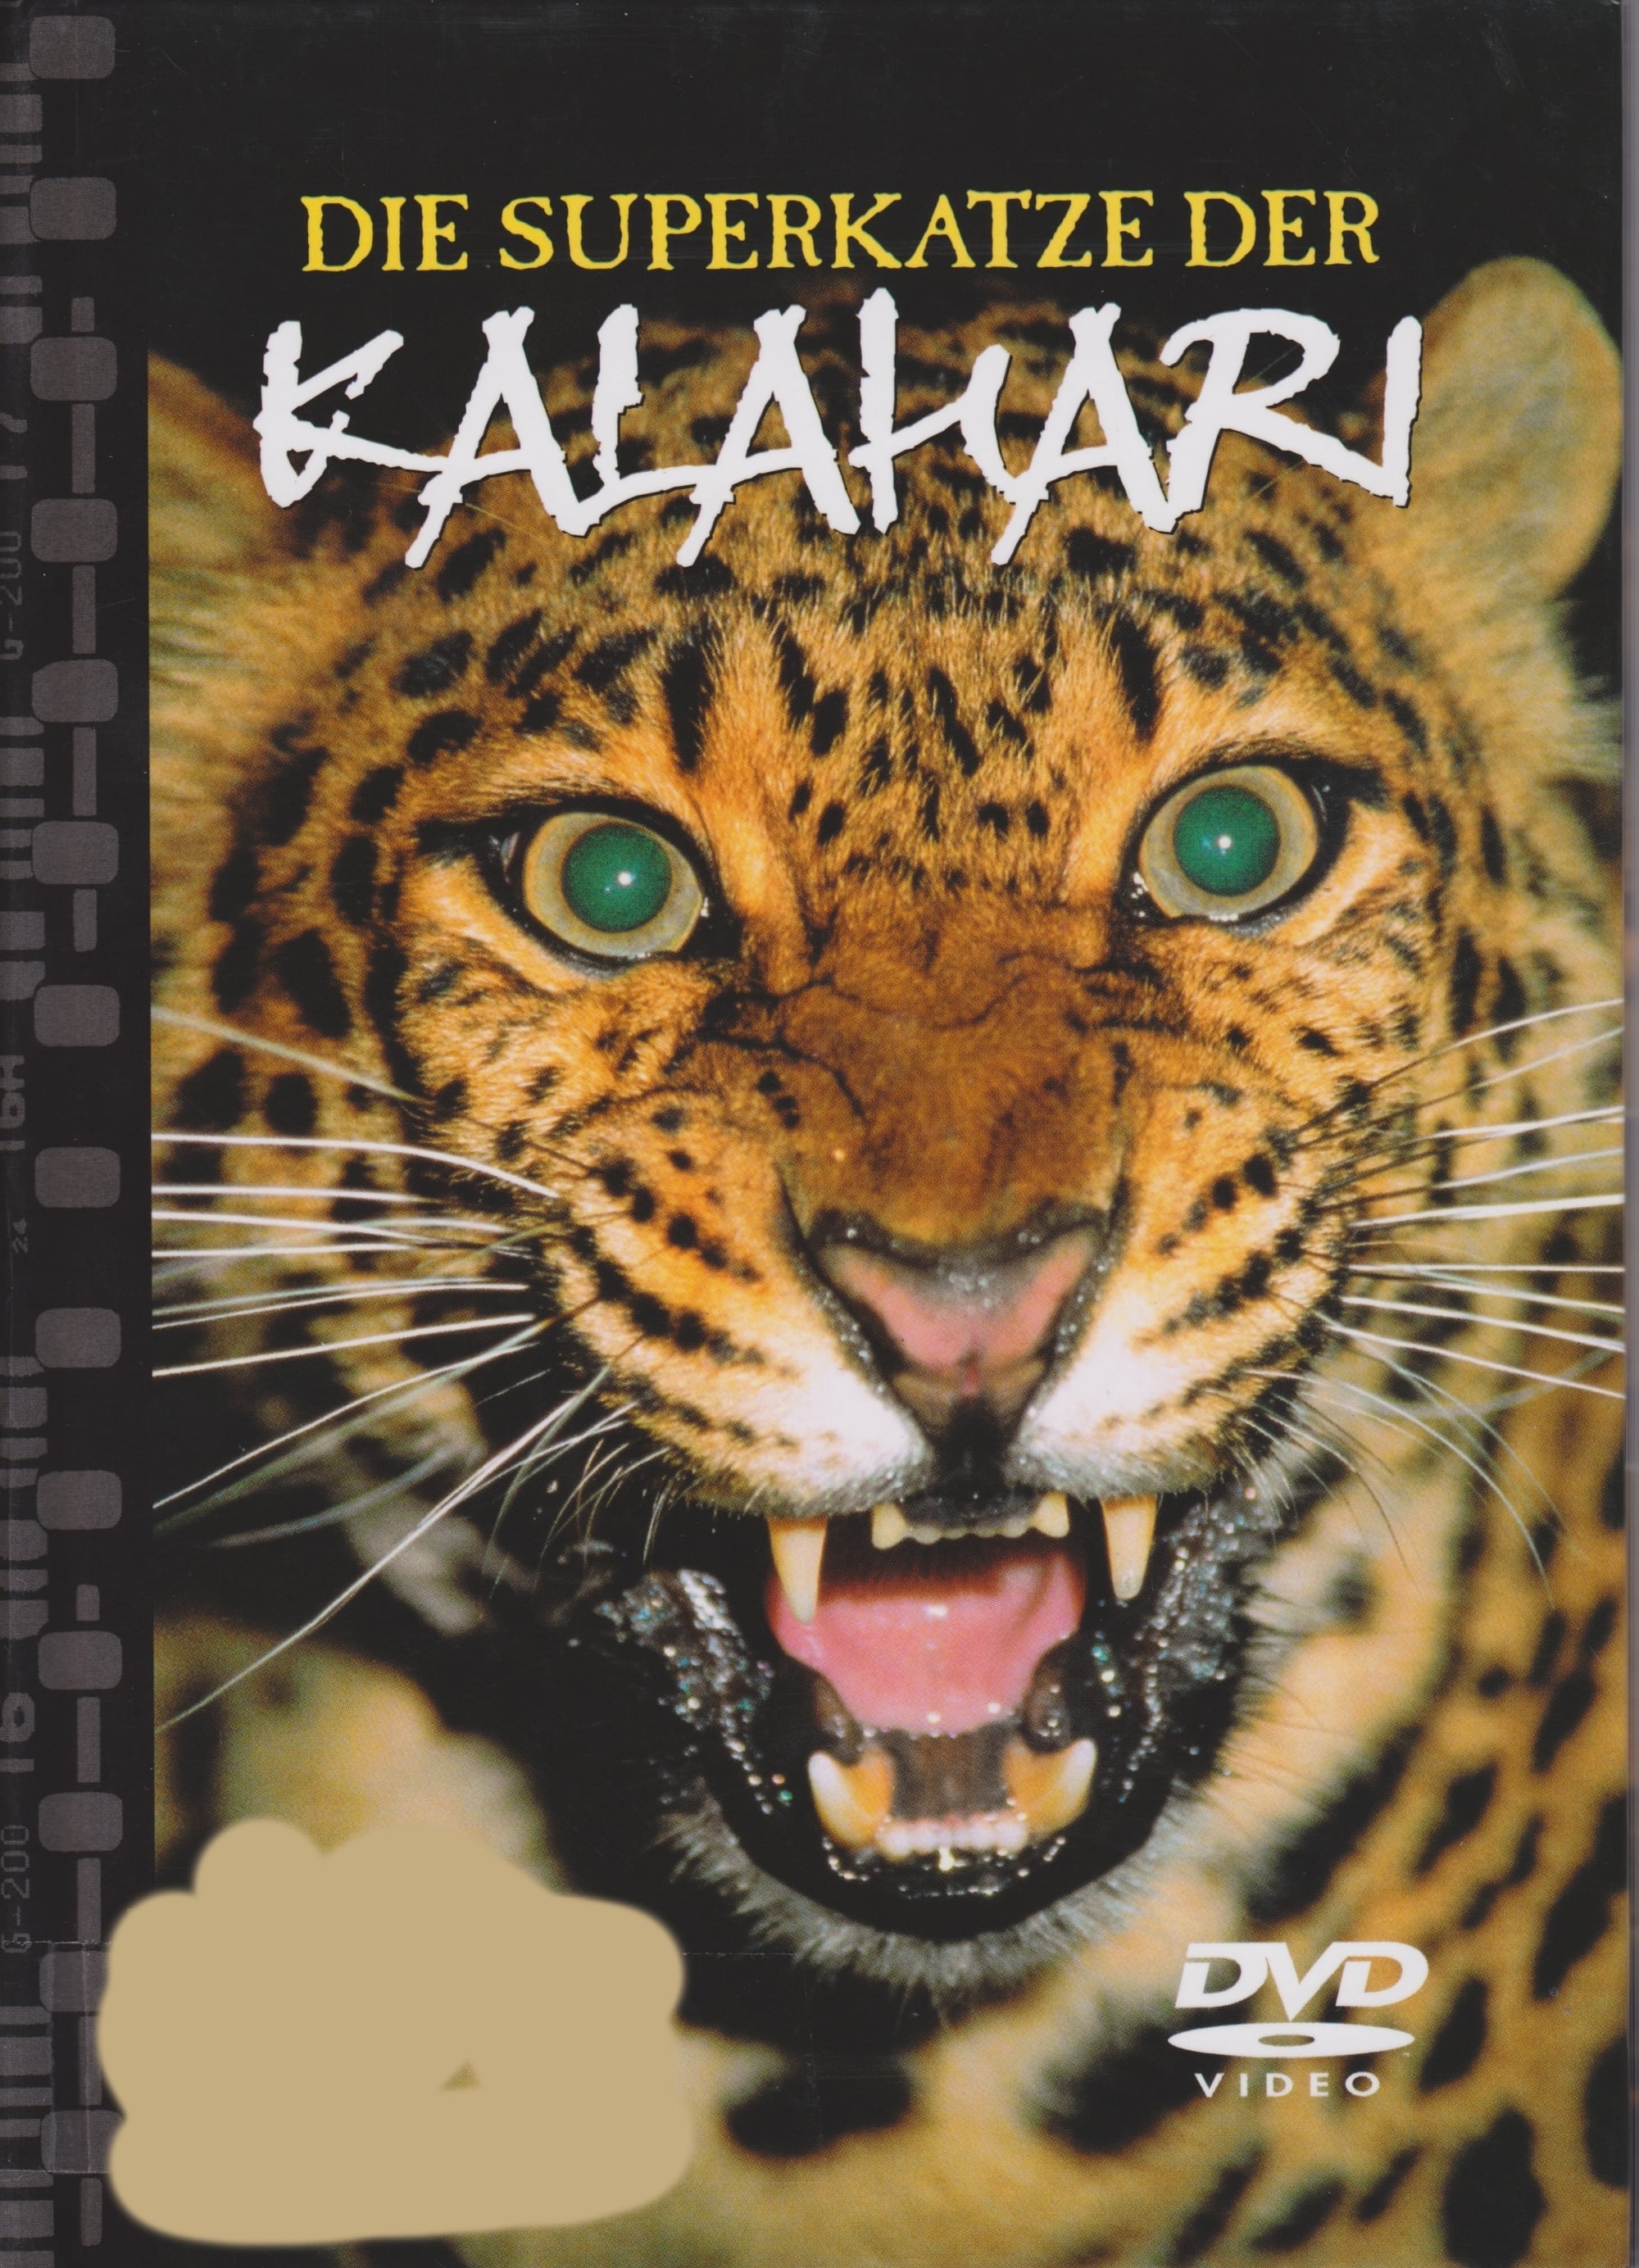 Natural Killers Predators Close Up: Kalahari Supercat